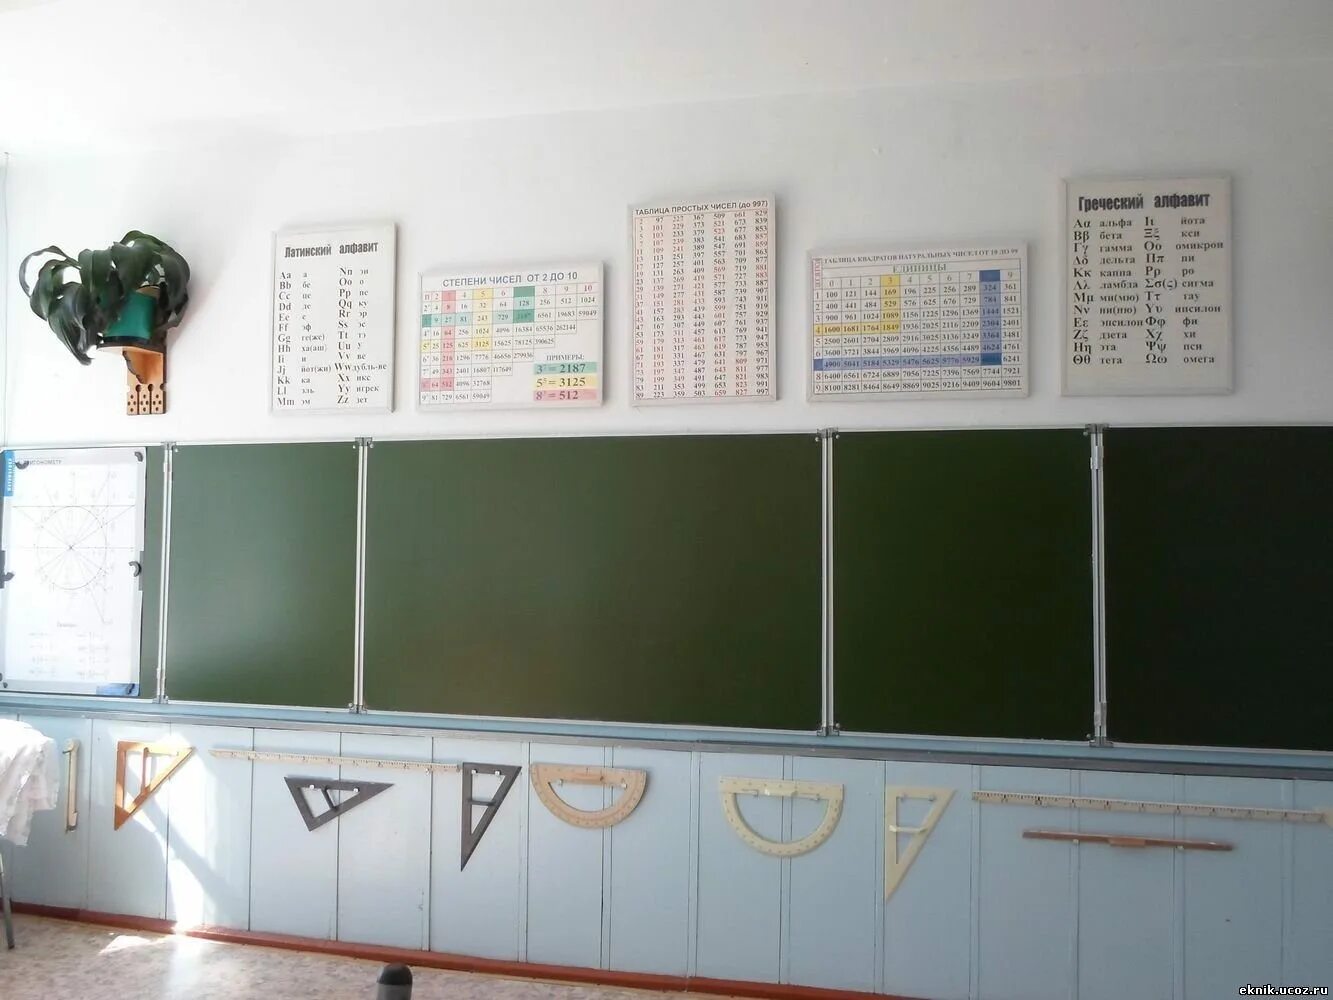 Стены в кабинете математики. Учебный класс доска. Шкафы для кабинета математики в школе современные. Доска в кабинете математики. В классе над доской висит плакат